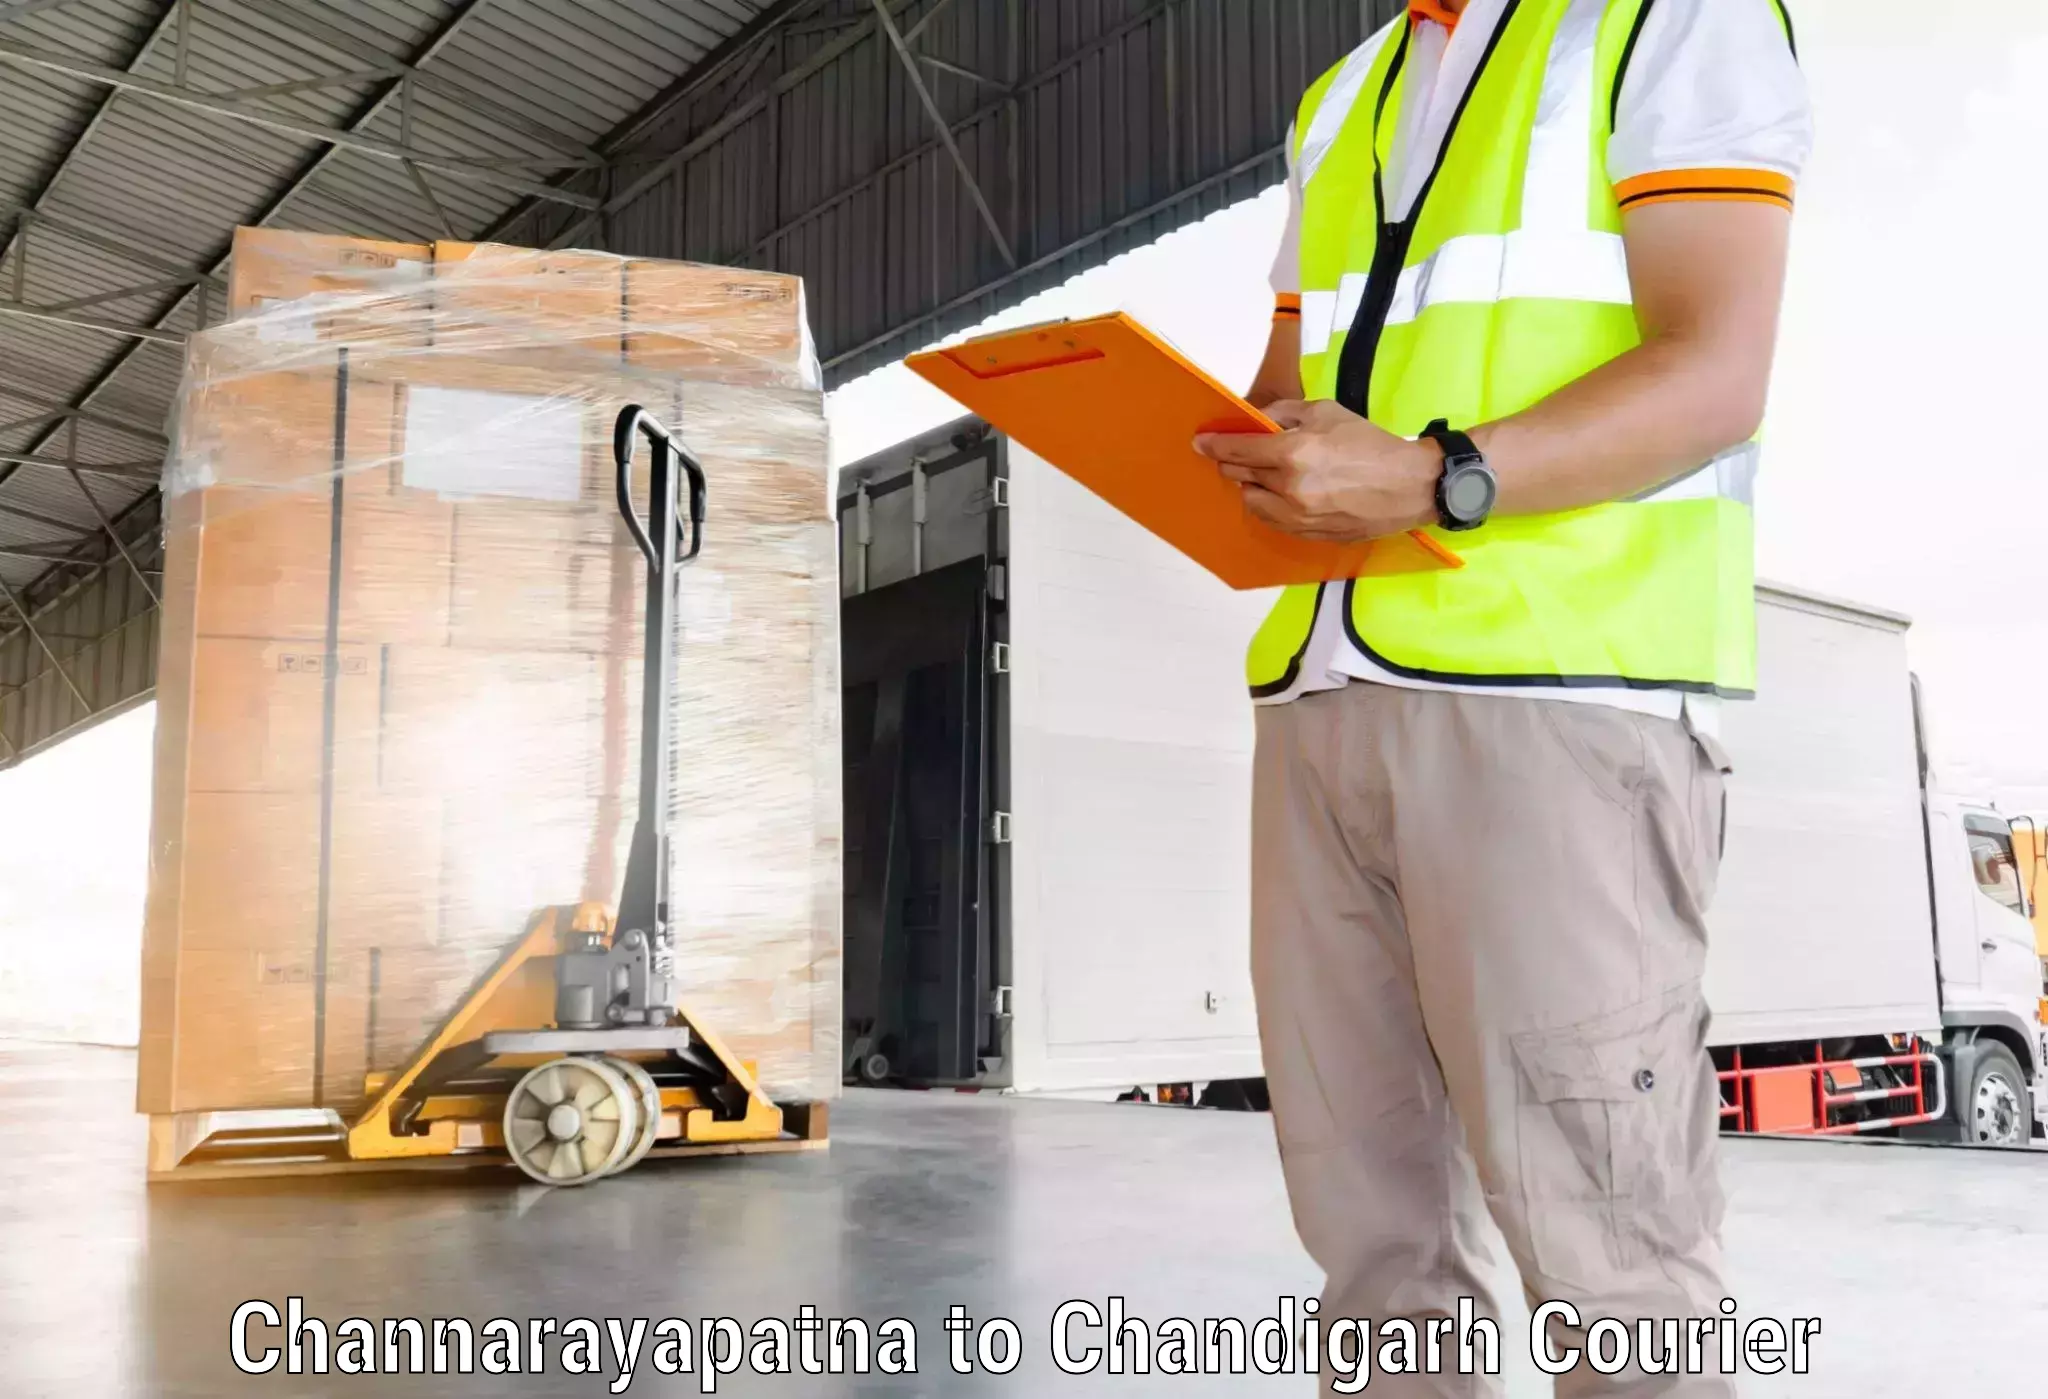 Reliable logistics providers Channarayapatna to Chandigarh